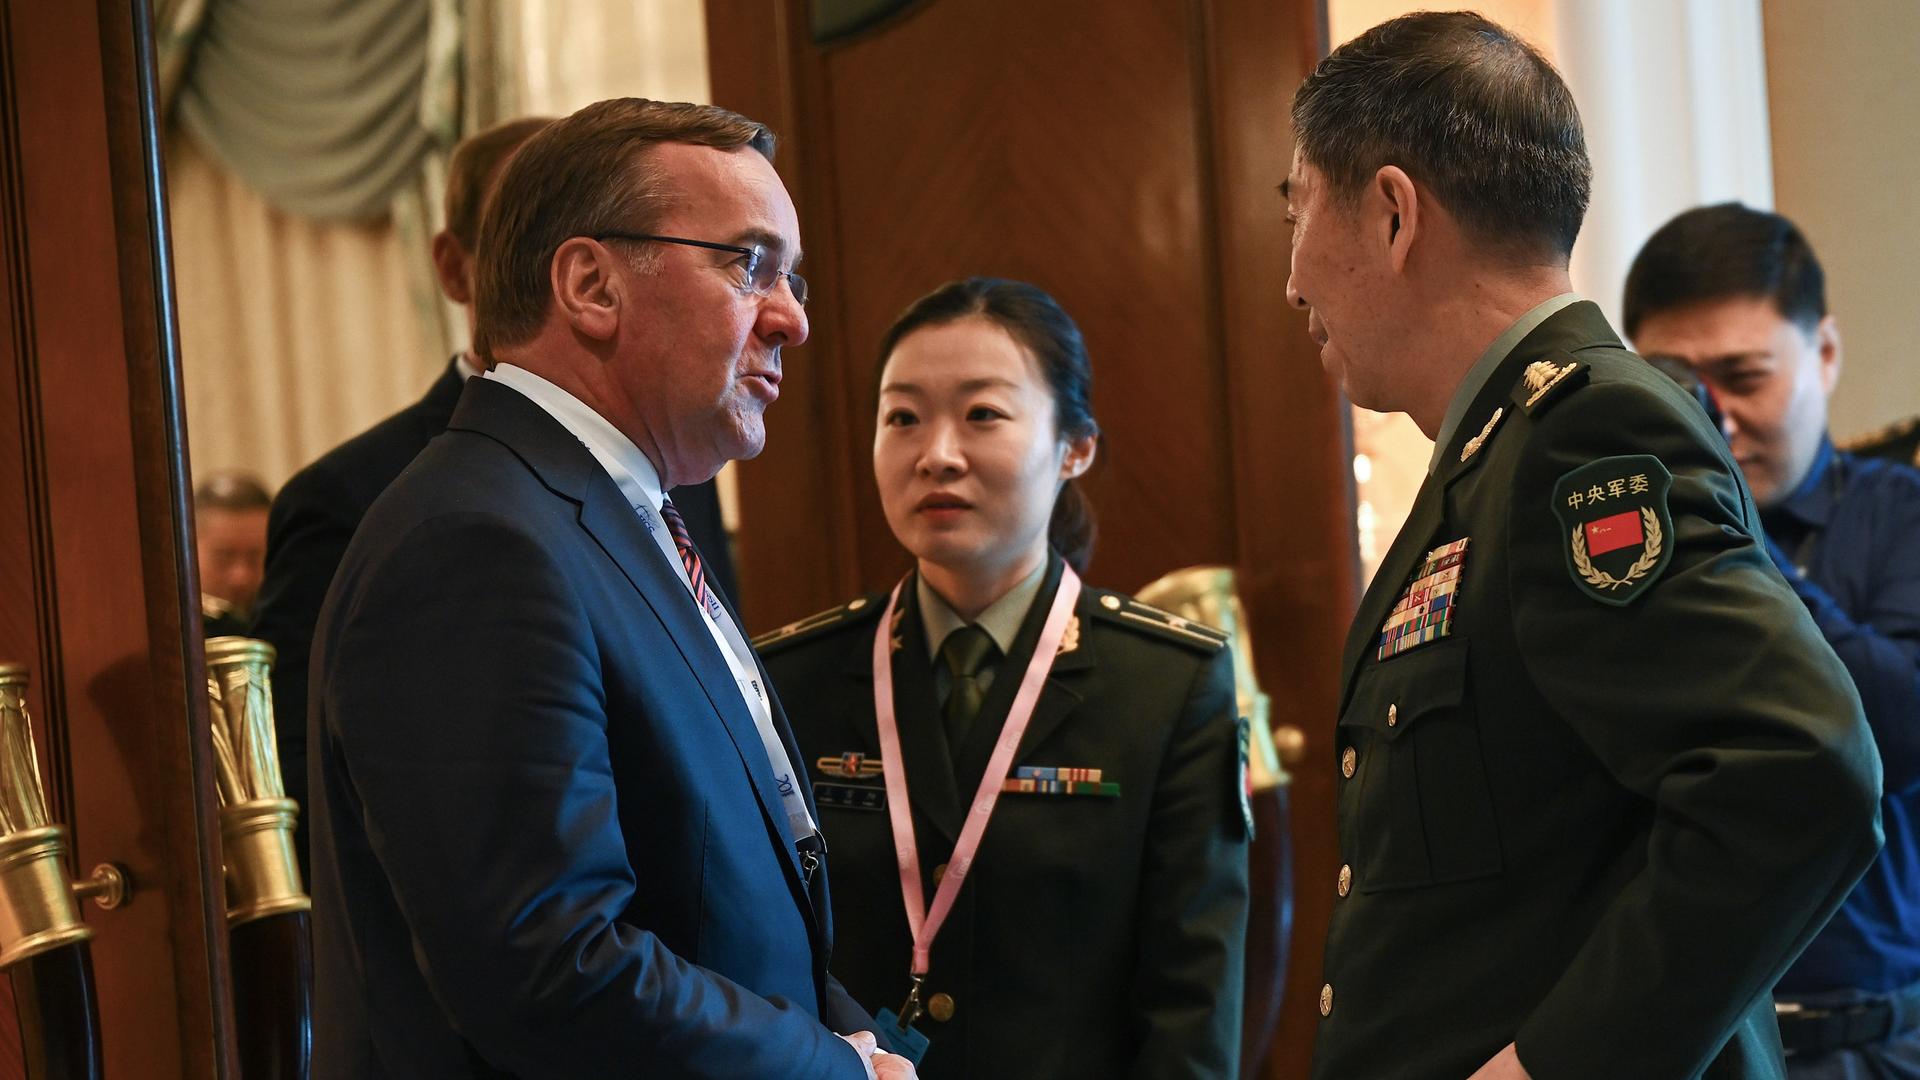 Das Foto zeigt Verteidigungsminister Boris Pistorius und den chinesischen Verteidigungsminister Li Shangfu. Sie stehen sich gegenüber und sprechen miteinander. Im Hintergrund ist eine chinesische Soldatin zu sehen.